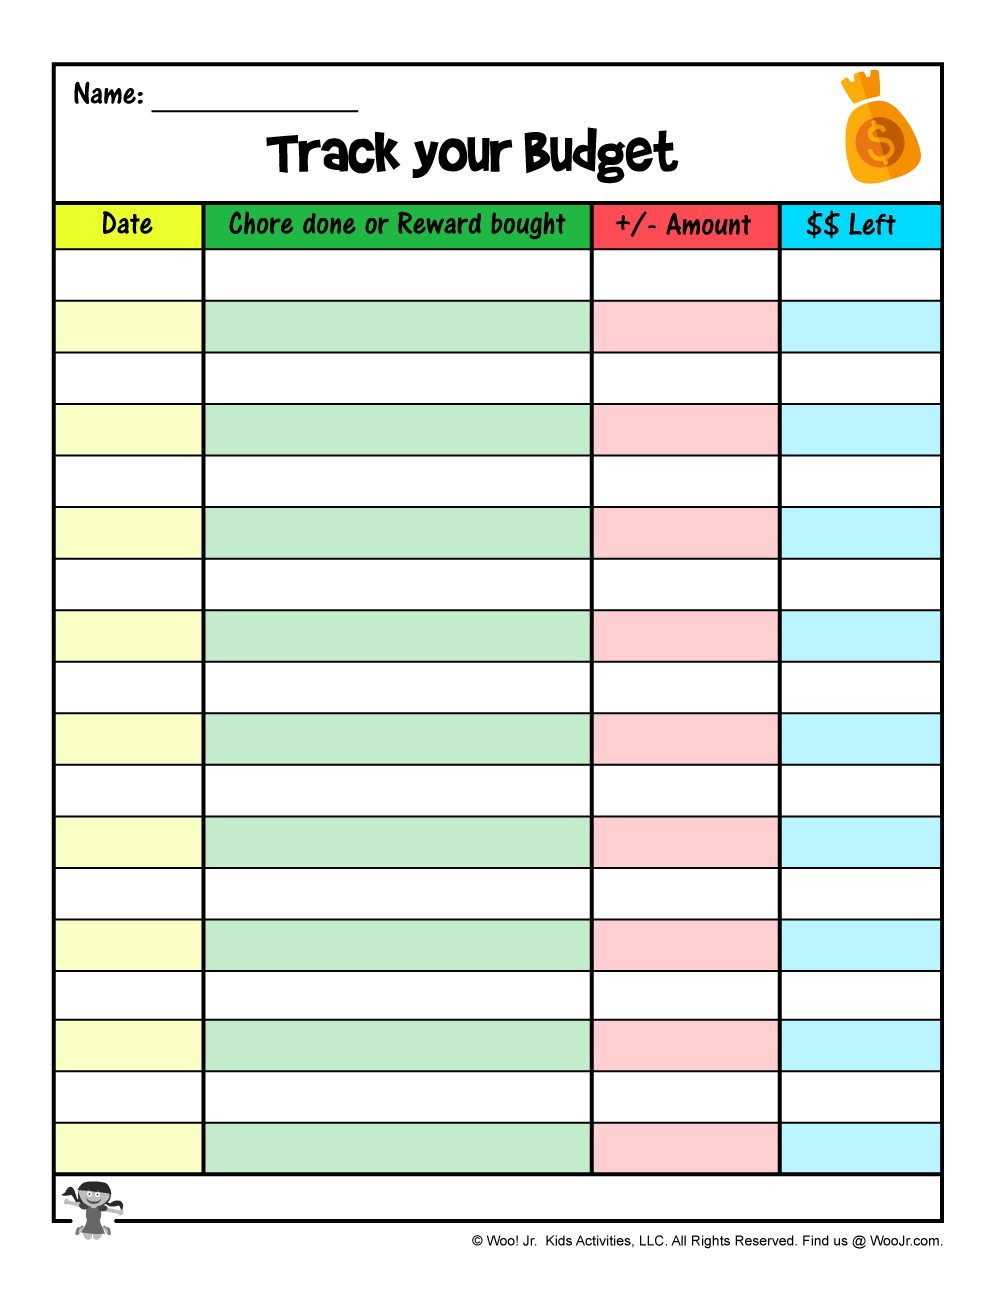 Printable-Budget-Tracker-Allowance-Tracker | Woo! Jr. Kids Activities